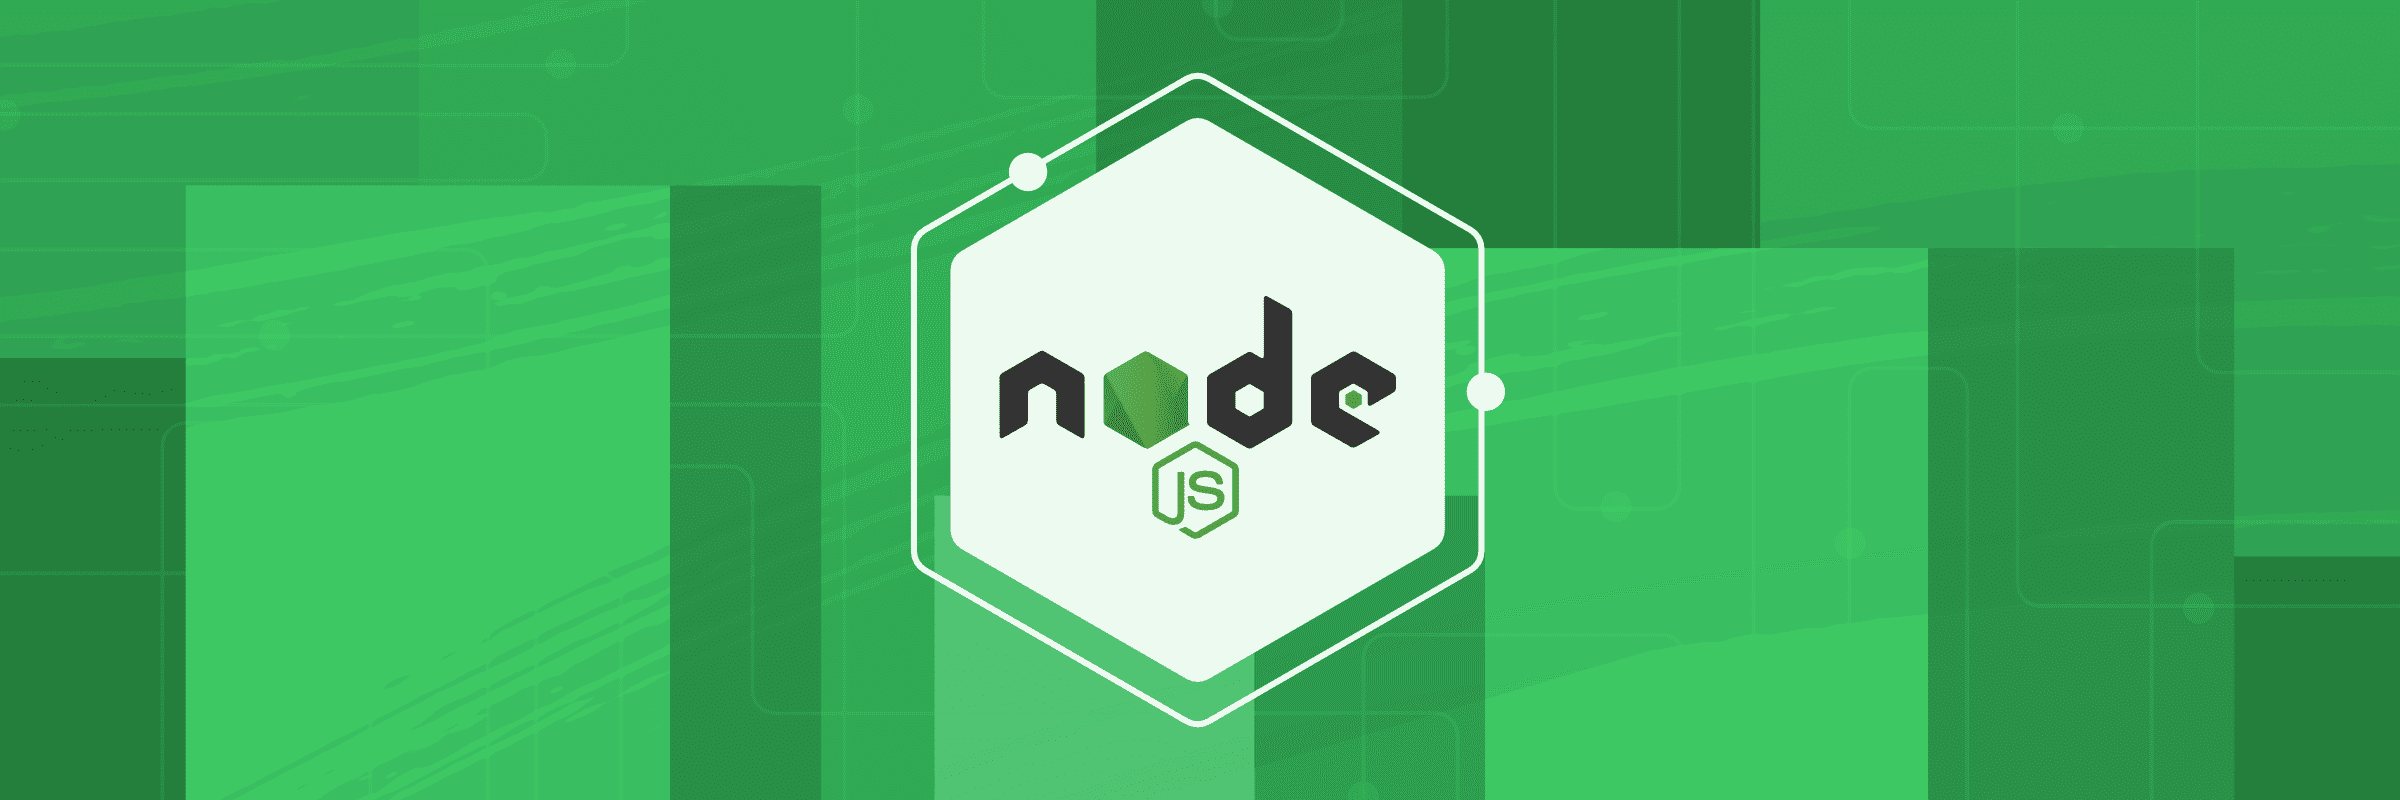 cover-nodejs-logo.png